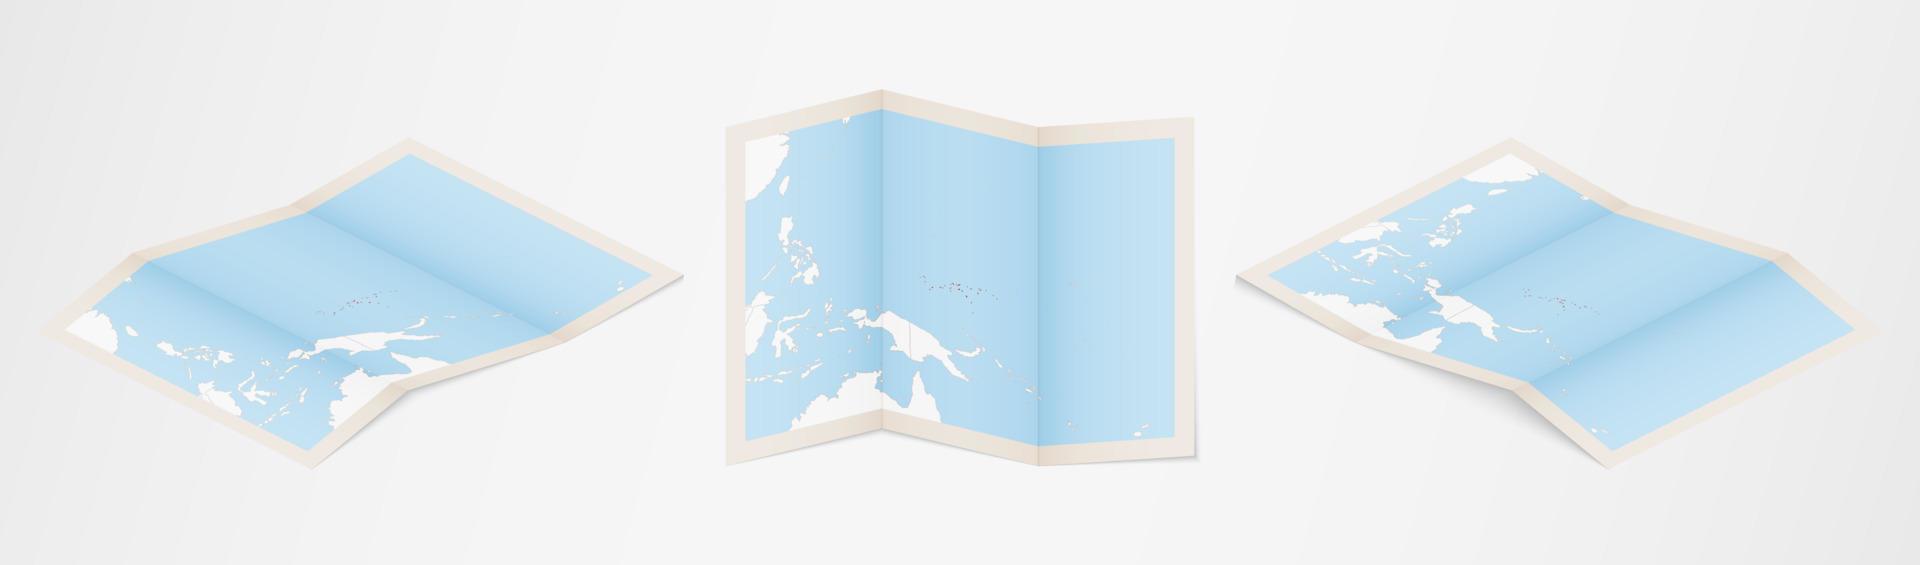 gevouwen kaart van Micronesië in drie verschillend versies. vector